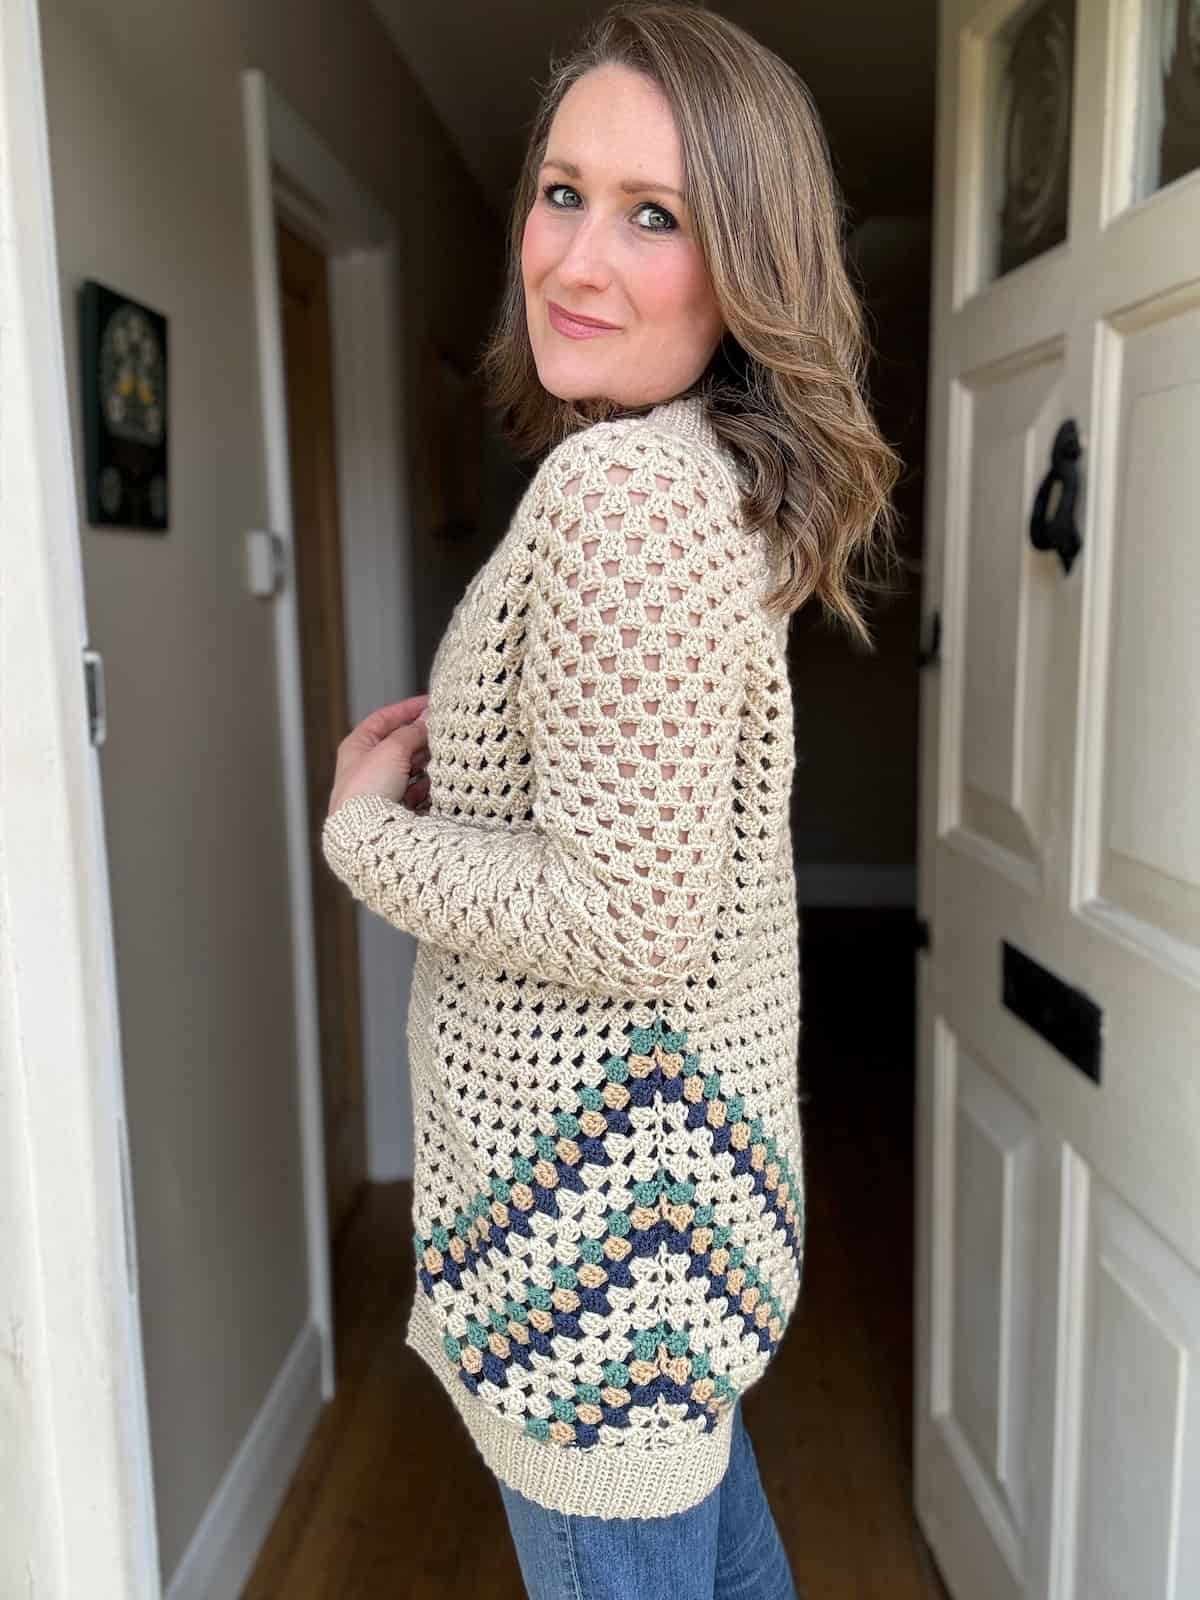 Woman posing in a hallway wearing a beige crochet cardigan.